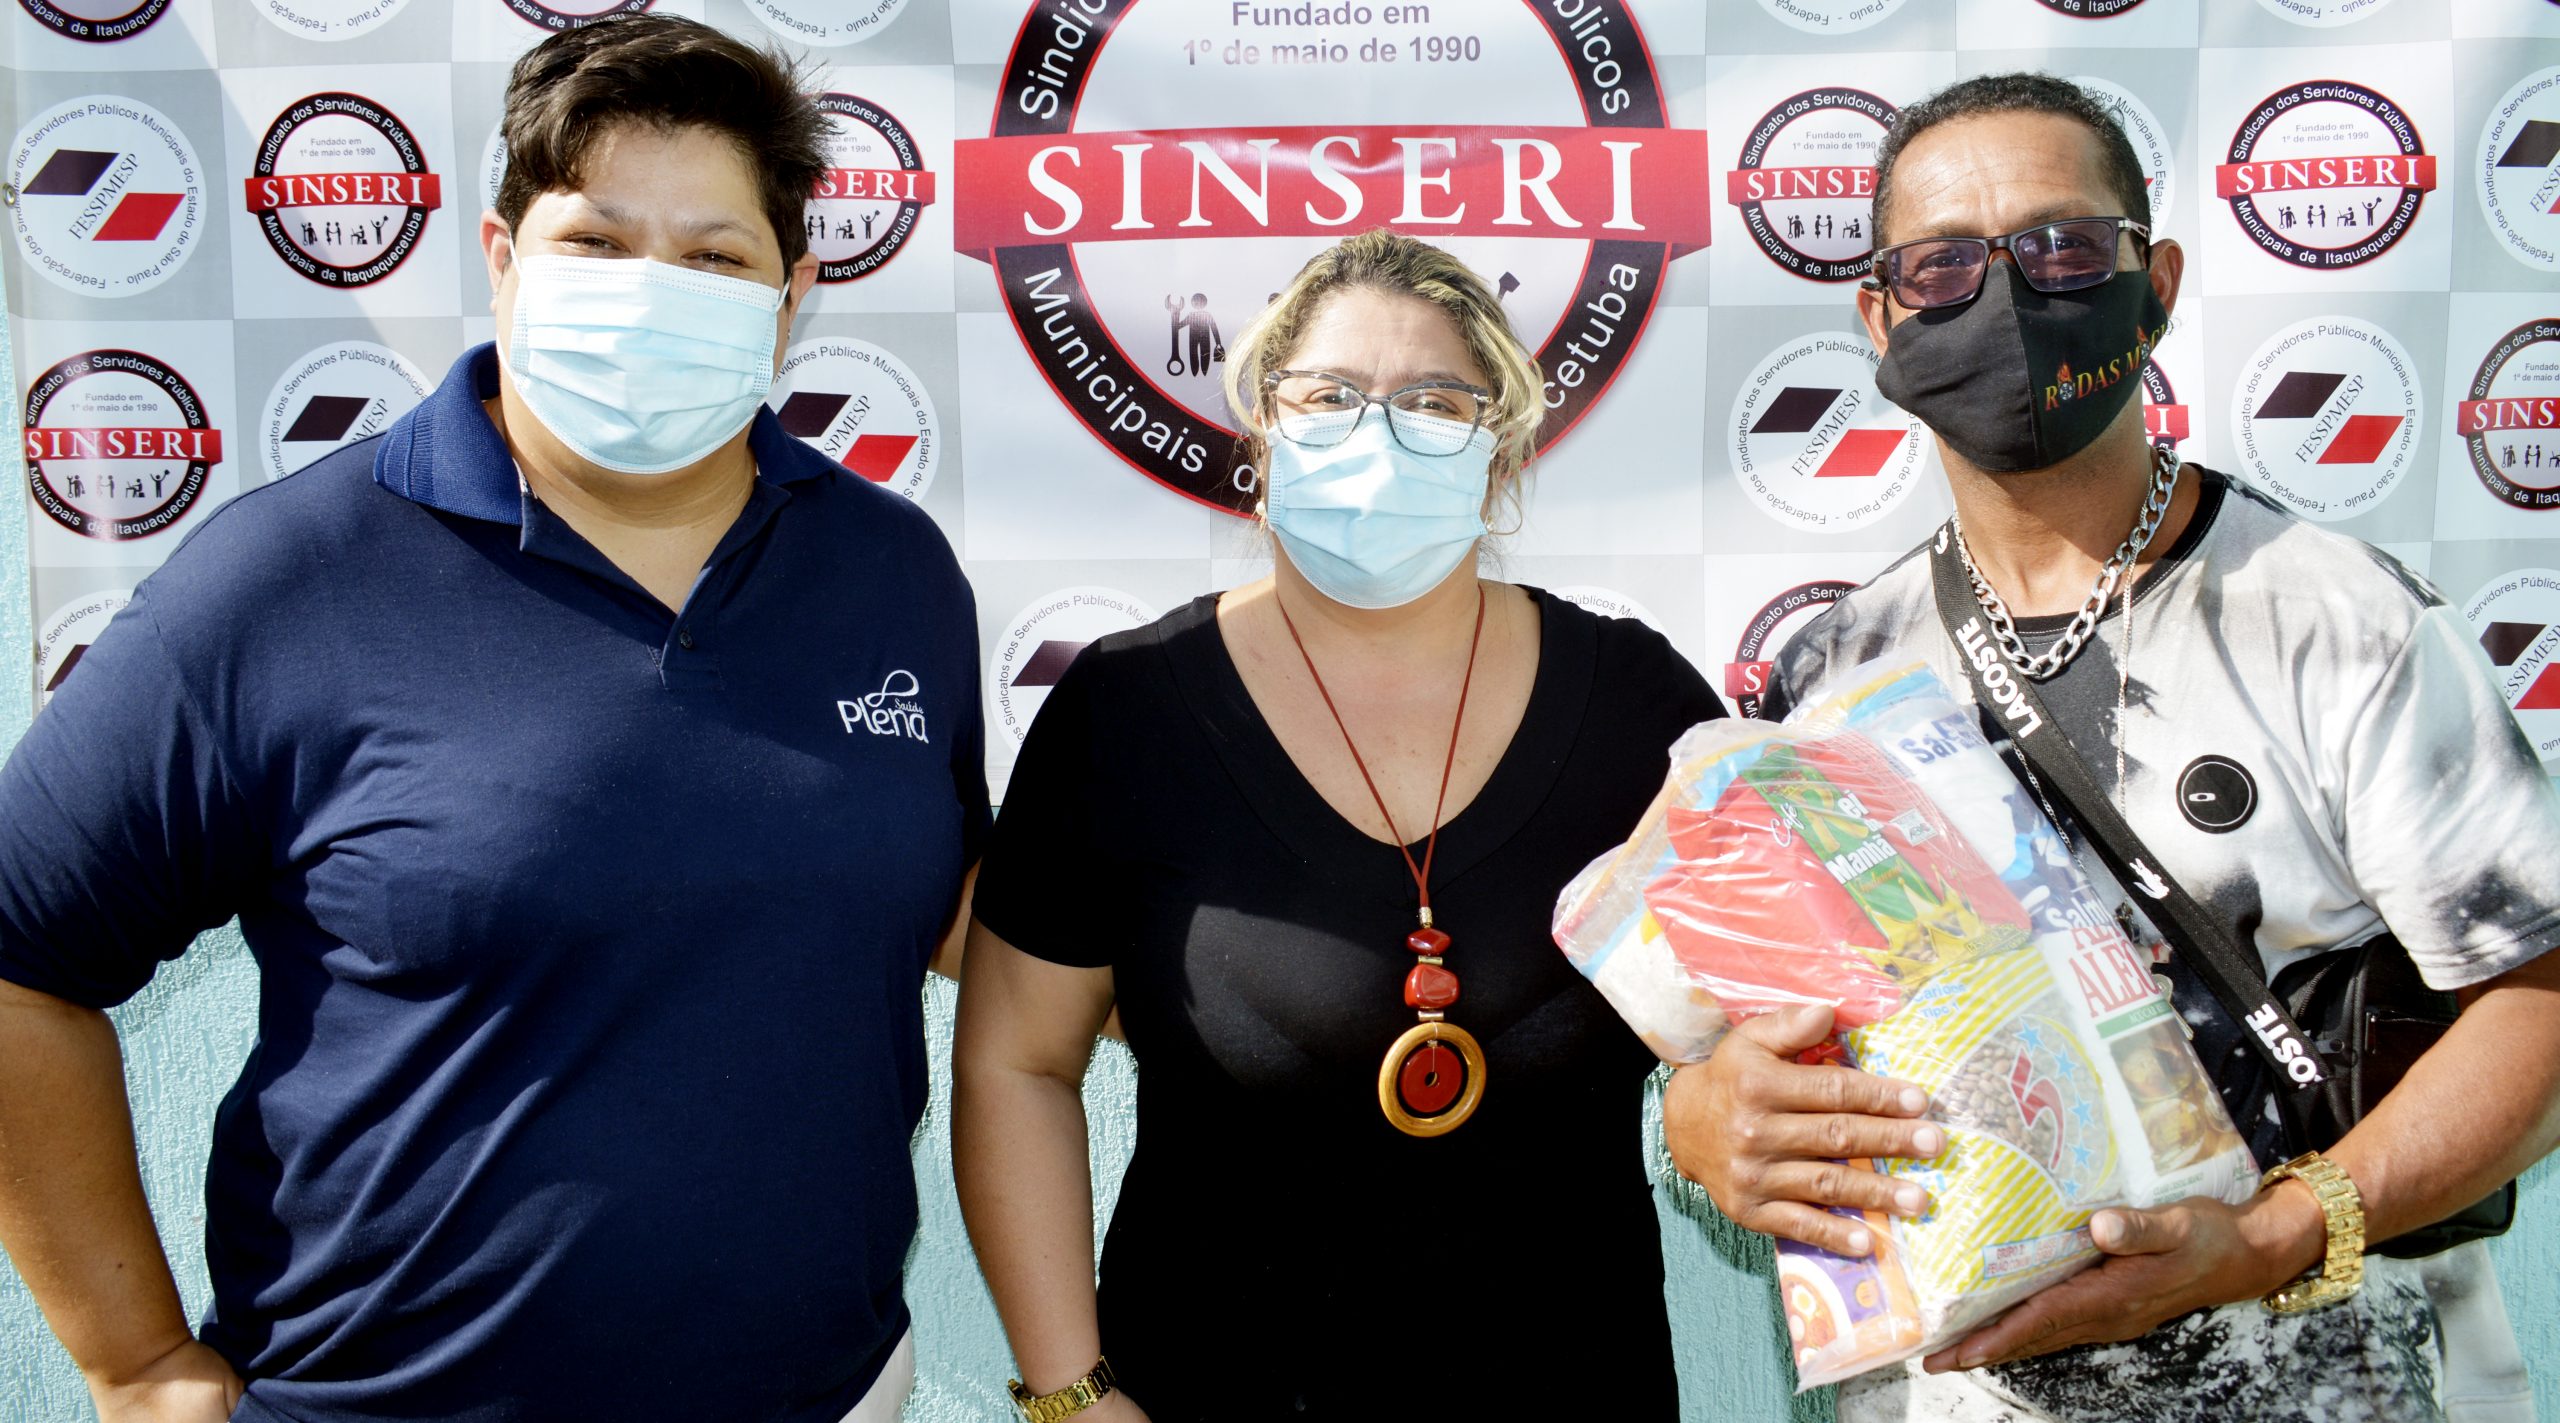 Sinseri recebe doação de cestas de alimentos da Plena e inicia distribuição